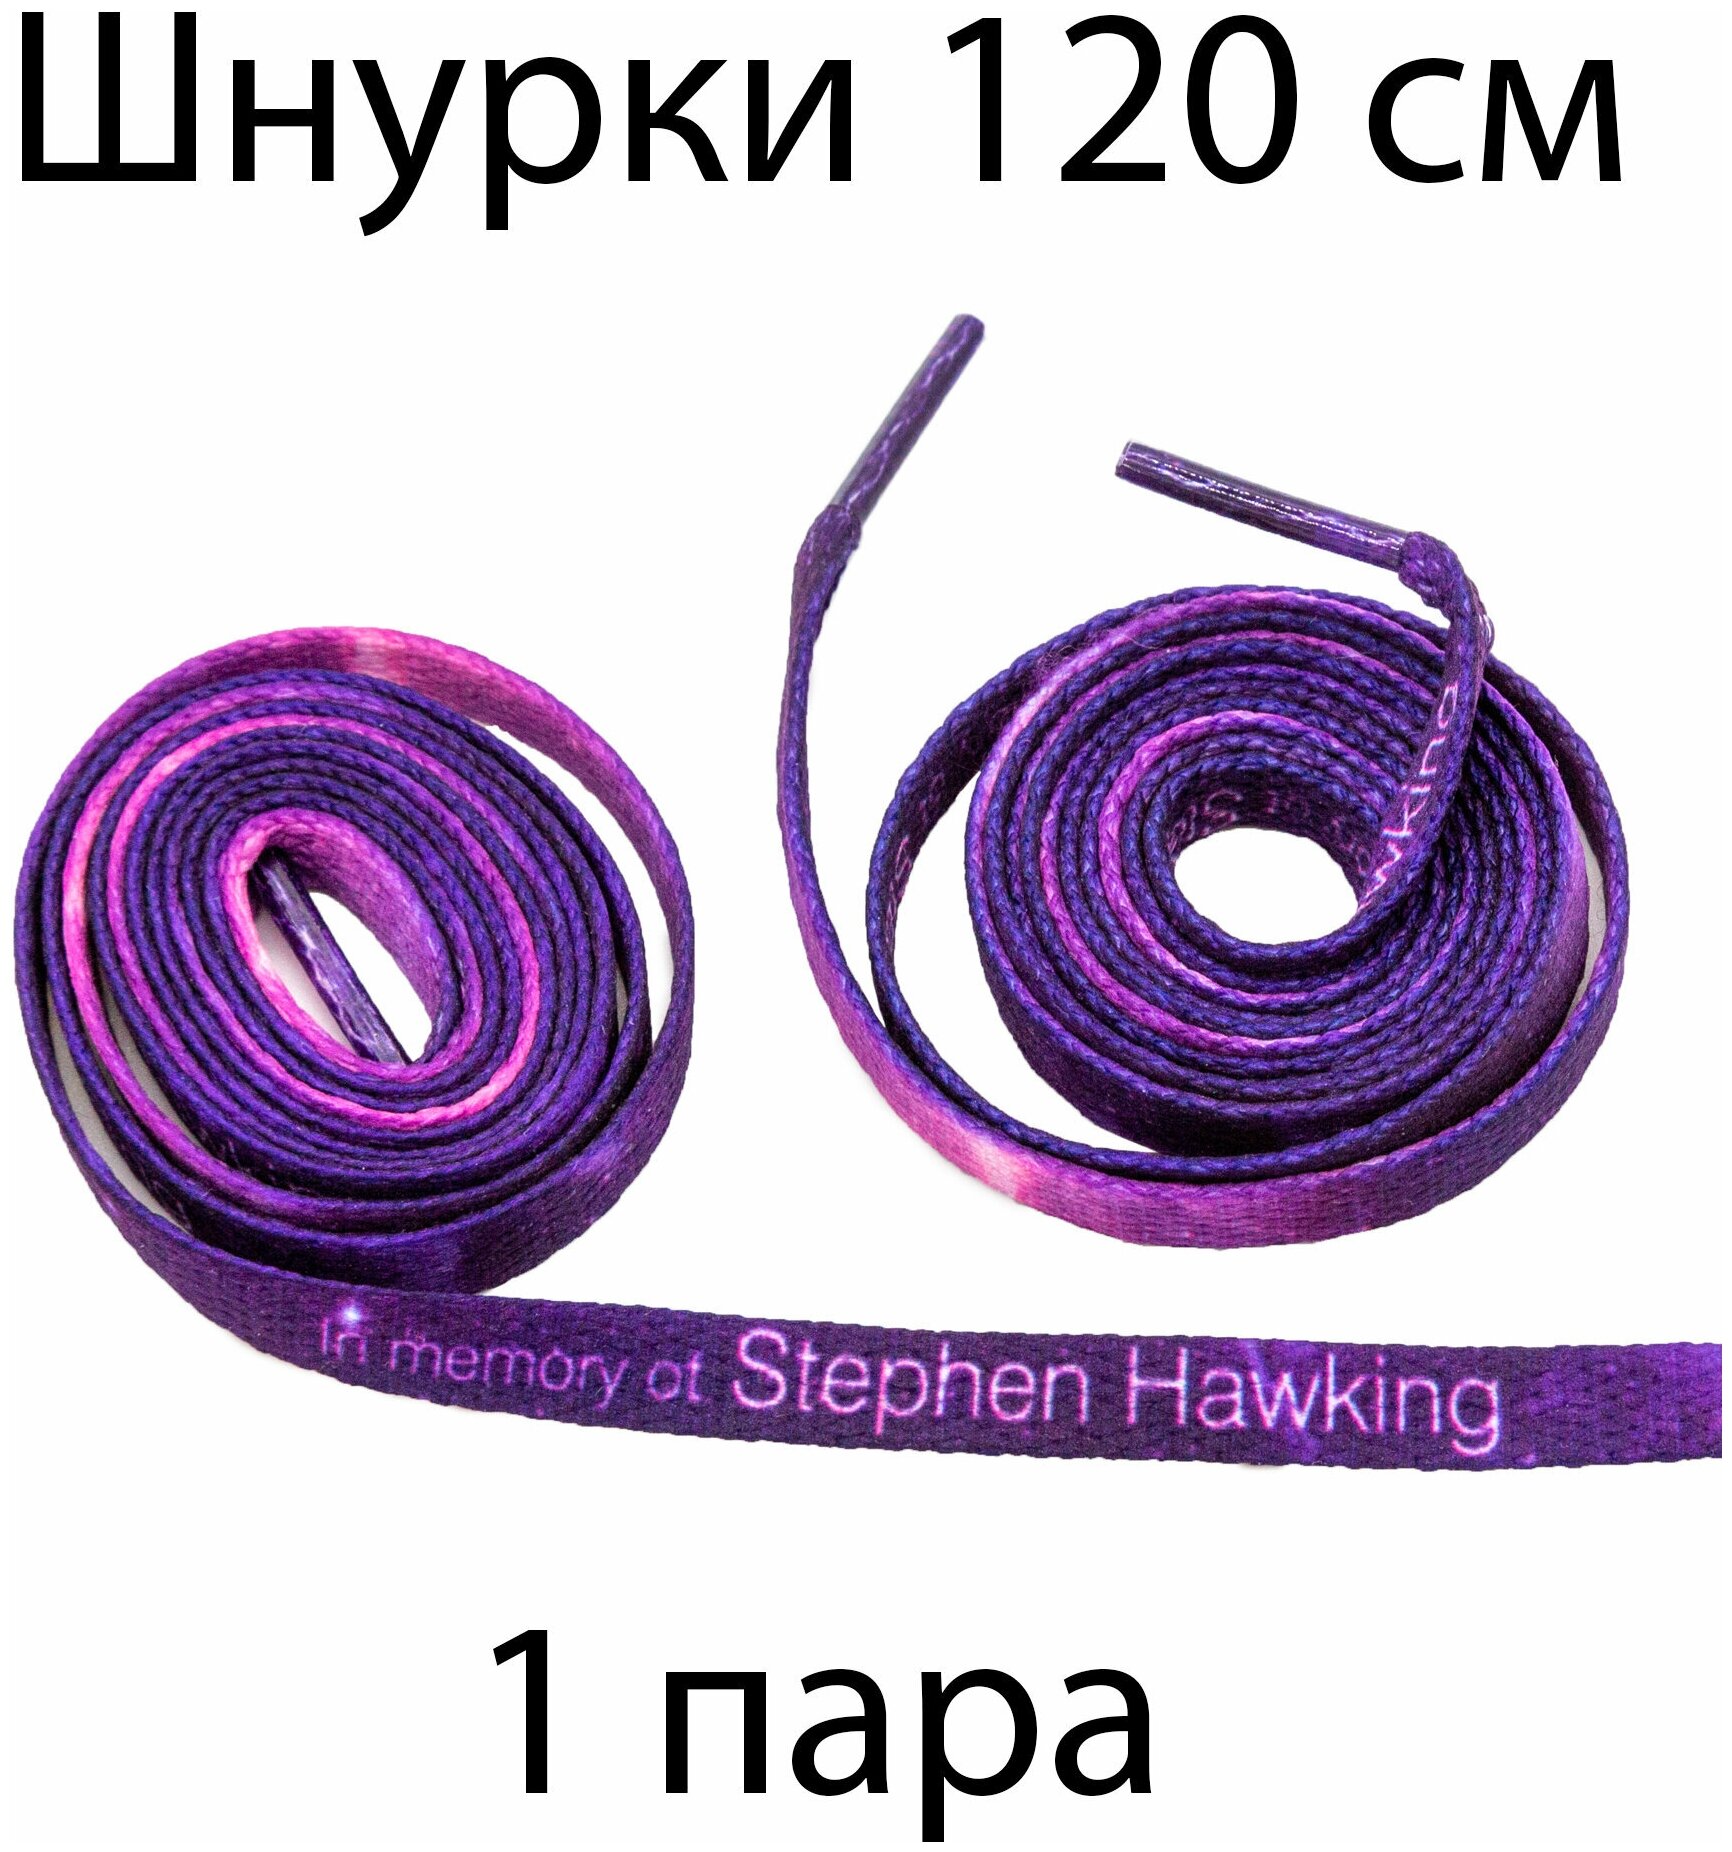 Шнурки текстильные с надписью In memory of Stephen Hawking 120 см / Шнурки для кроссовок плоские с текстом